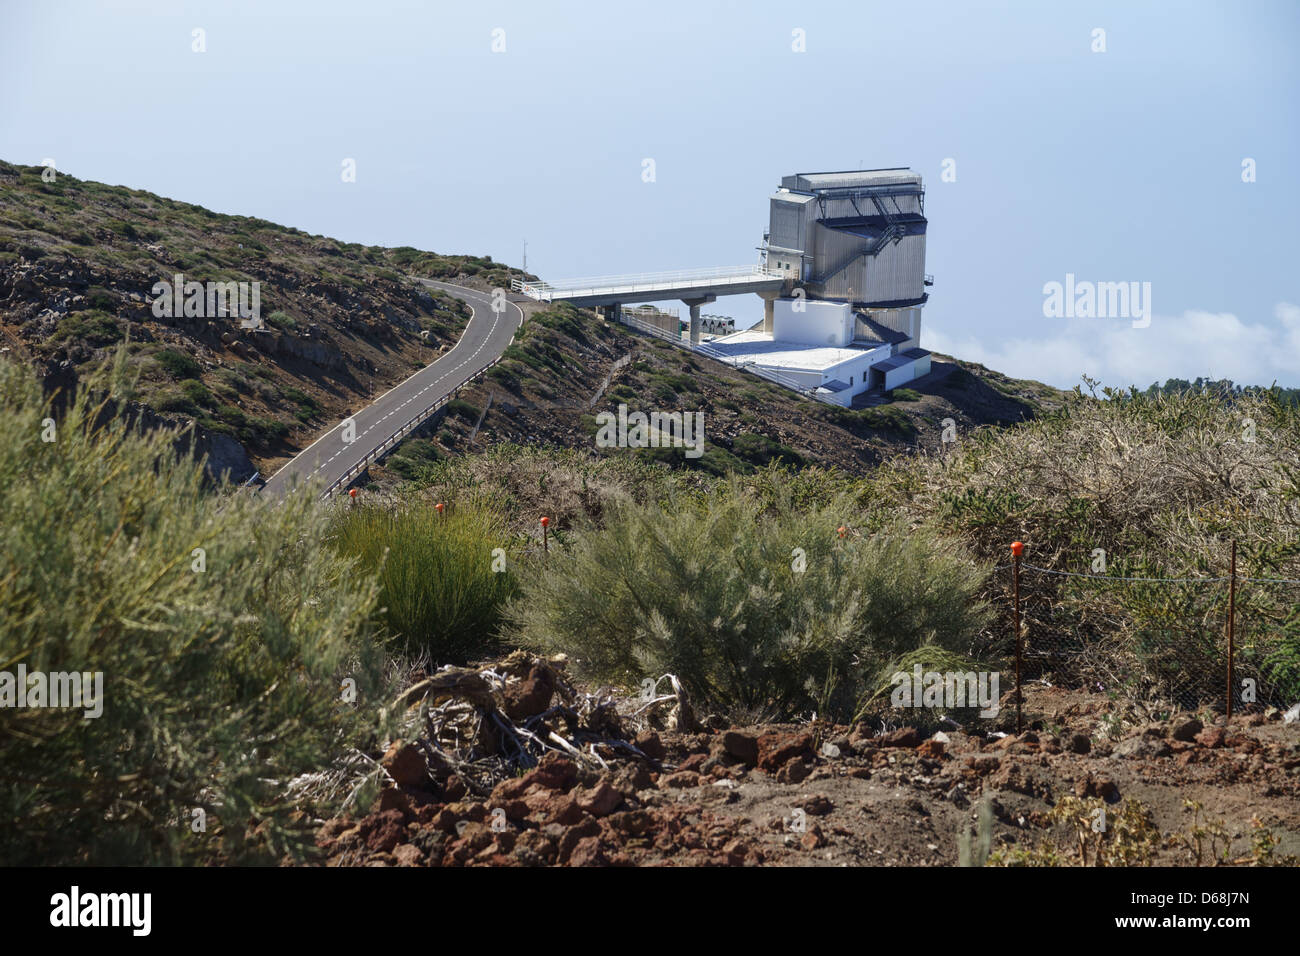 La Palma Isole Canarie - gli osservatori a Los Muchachos. Il Telescopio italiano Galileo. Foto Stock